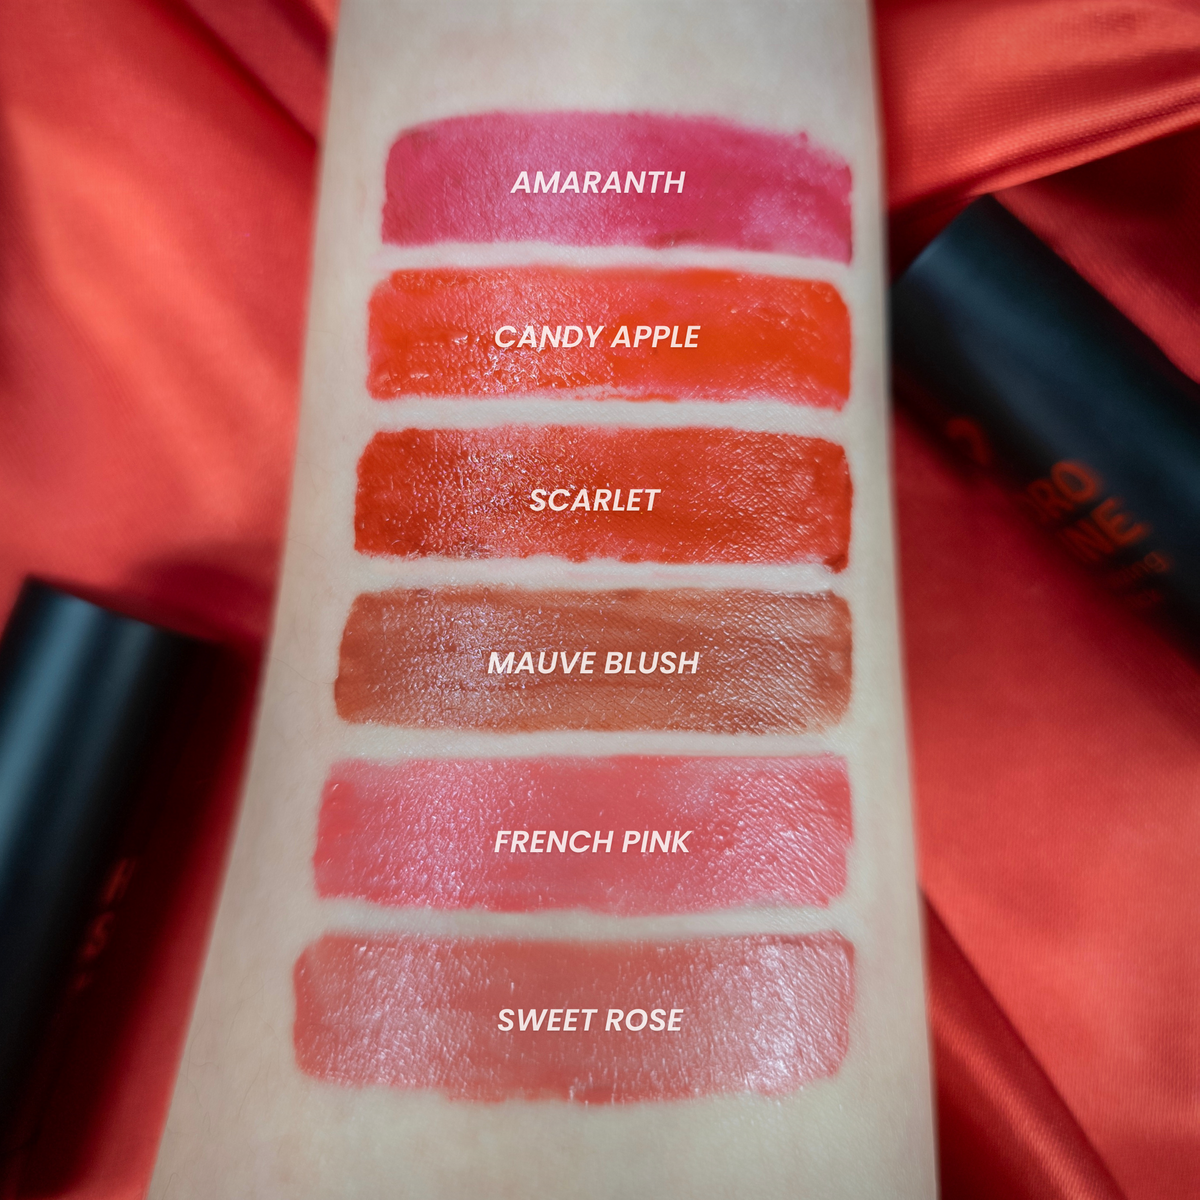 Hydro Shine Moisturizing Lipstick